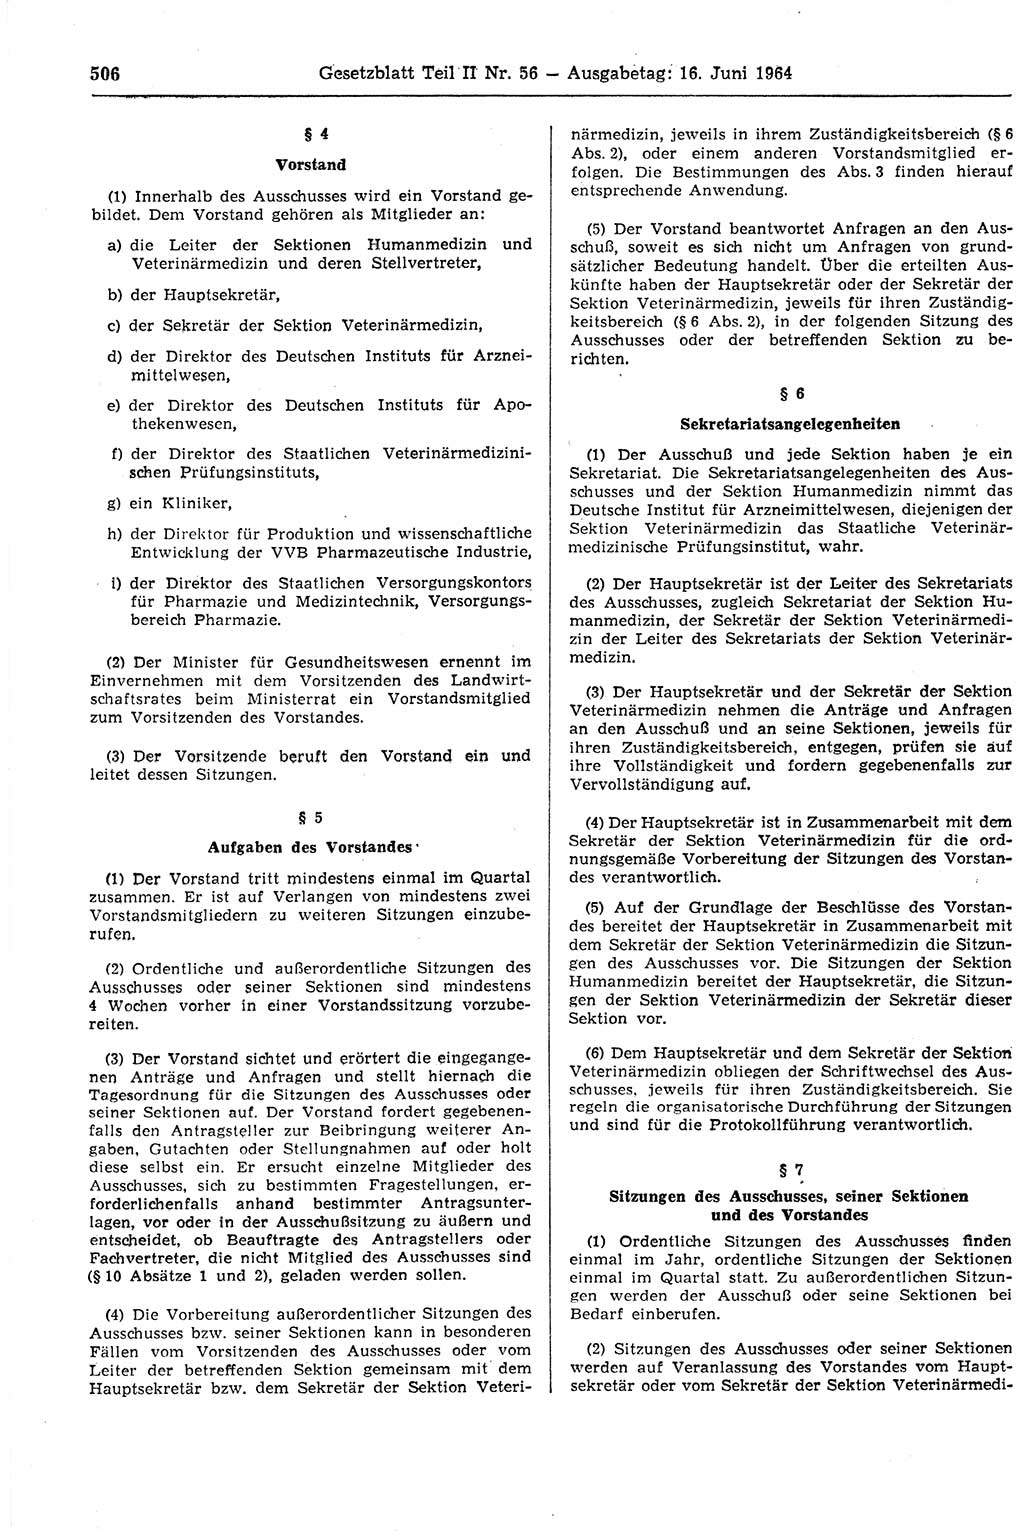 Gesetzblatt (GBl.) der Deutschen Demokratischen Republik (DDR) Teil ⅠⅠ 1964, Seite 506 (GBl. DDR ⅠⅠ 1964, S. 506)